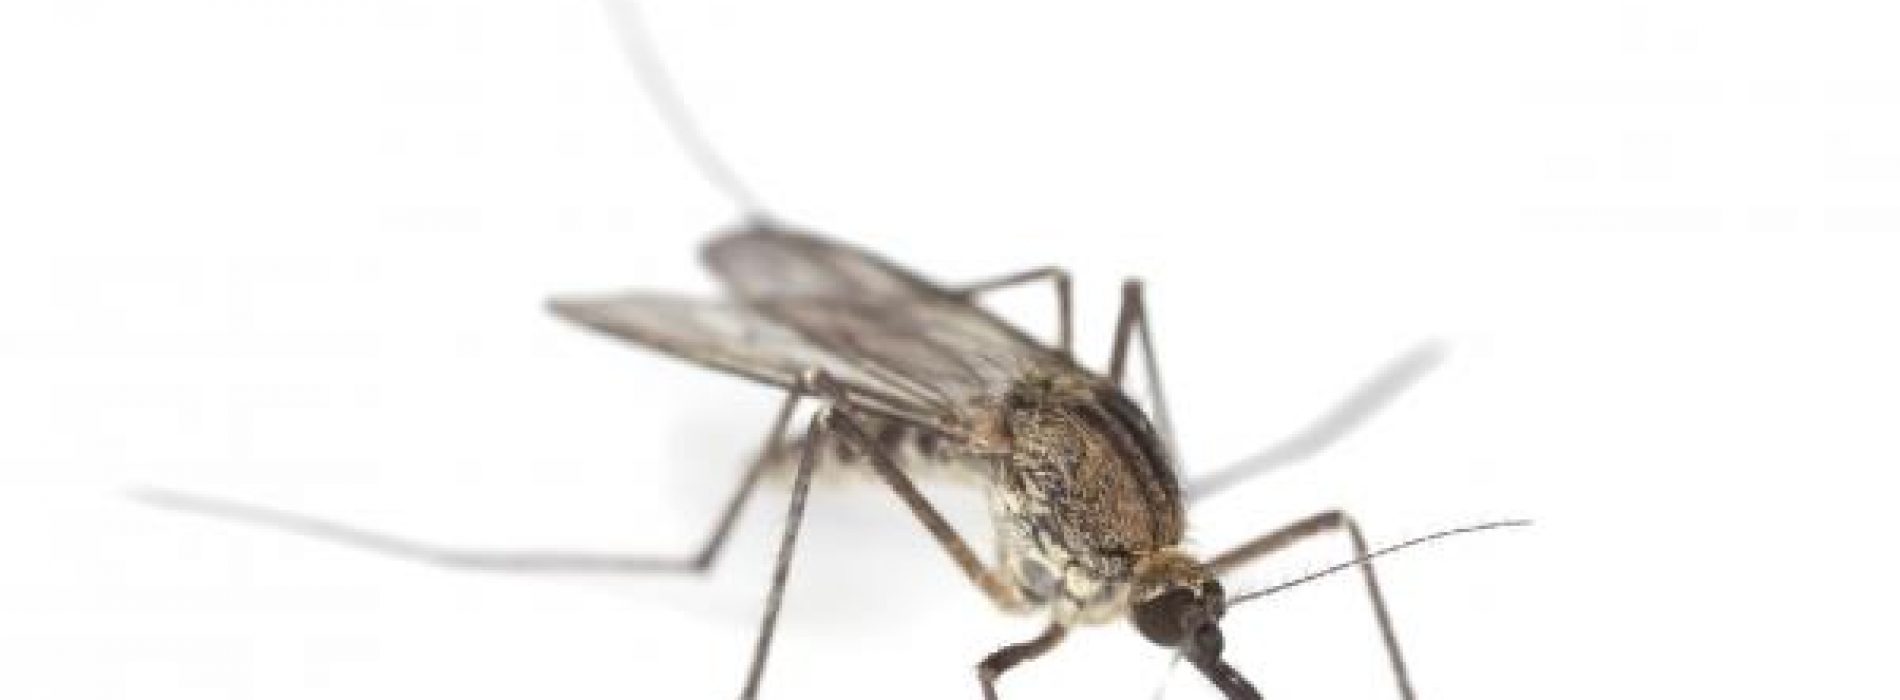 De beste manier om geen last te hebben van een muggenbeet